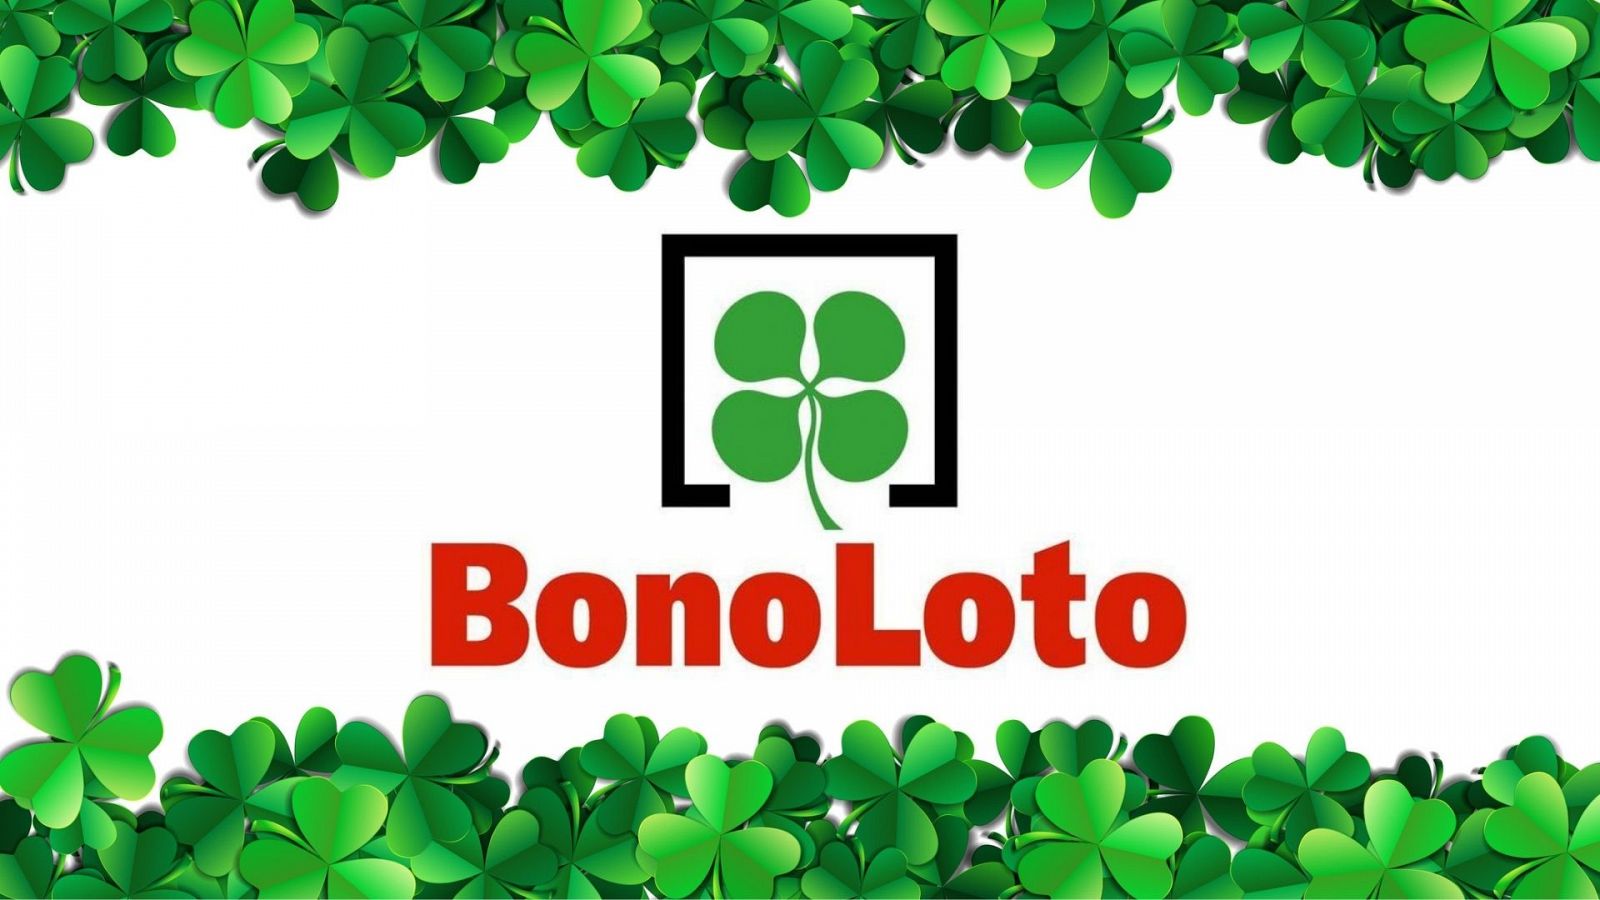 La Bonoloto se representa con un trébol de cuatro hojas, símbolo de buena suerte